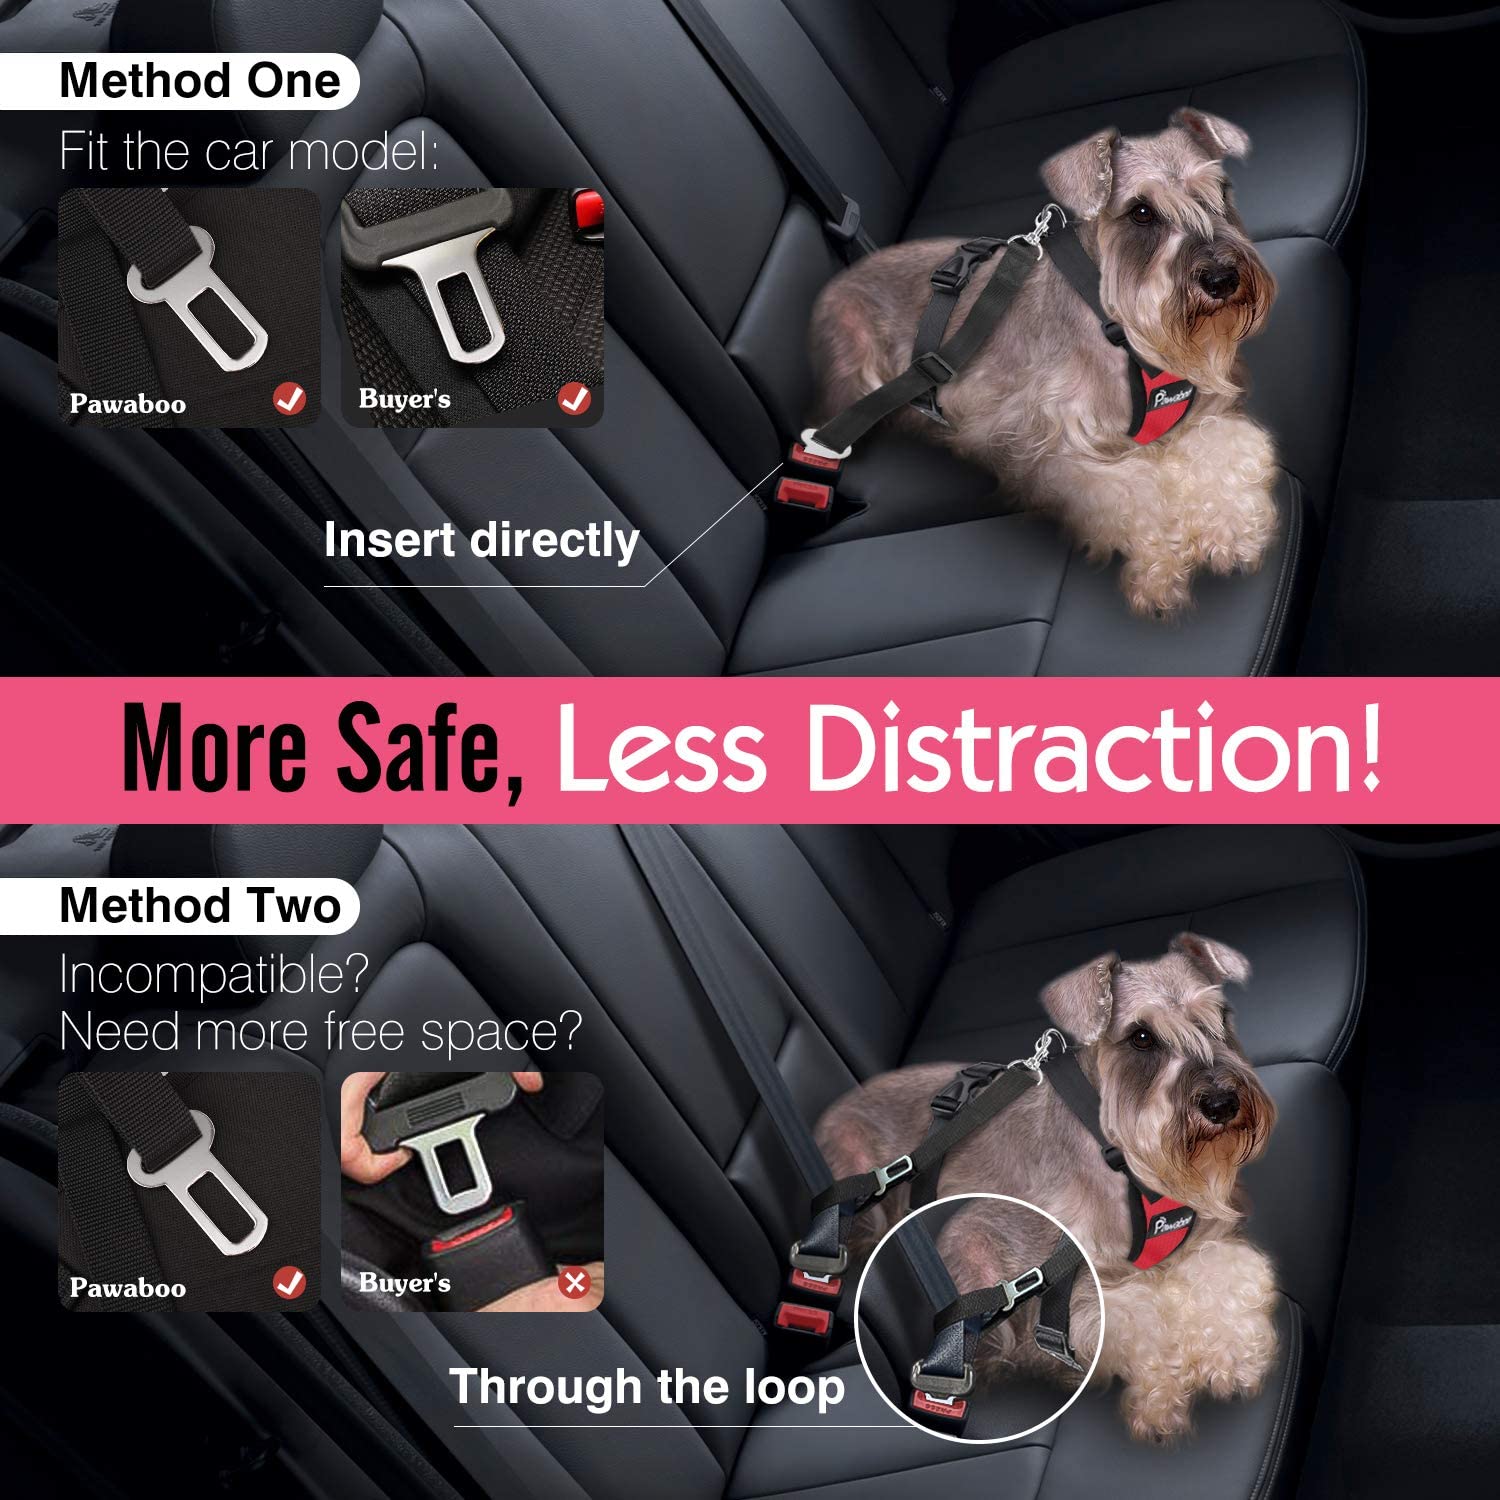  Pawaboo Cinturón De Seguridad de Perro - Adjustable Vest/Harness Car Safety Adecuado para Perros de 55 LBS - 88 LBS, Talla XL, Rojo & Blanco 